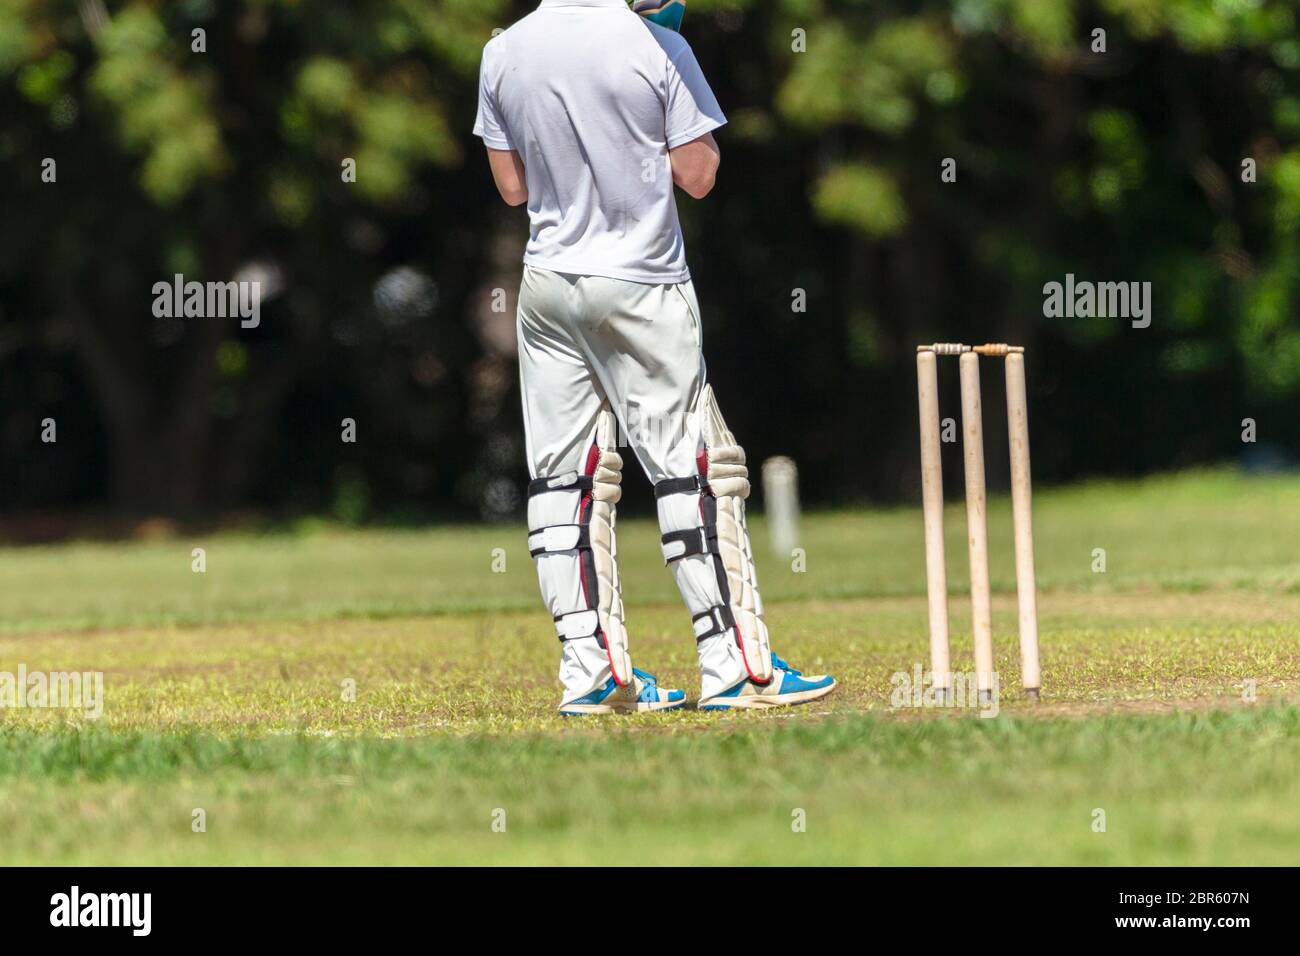 Juego de cricket jugador de primer plano bateando pelota golpe acción de golpe equipos de la escuela secundaria. Foto de stock